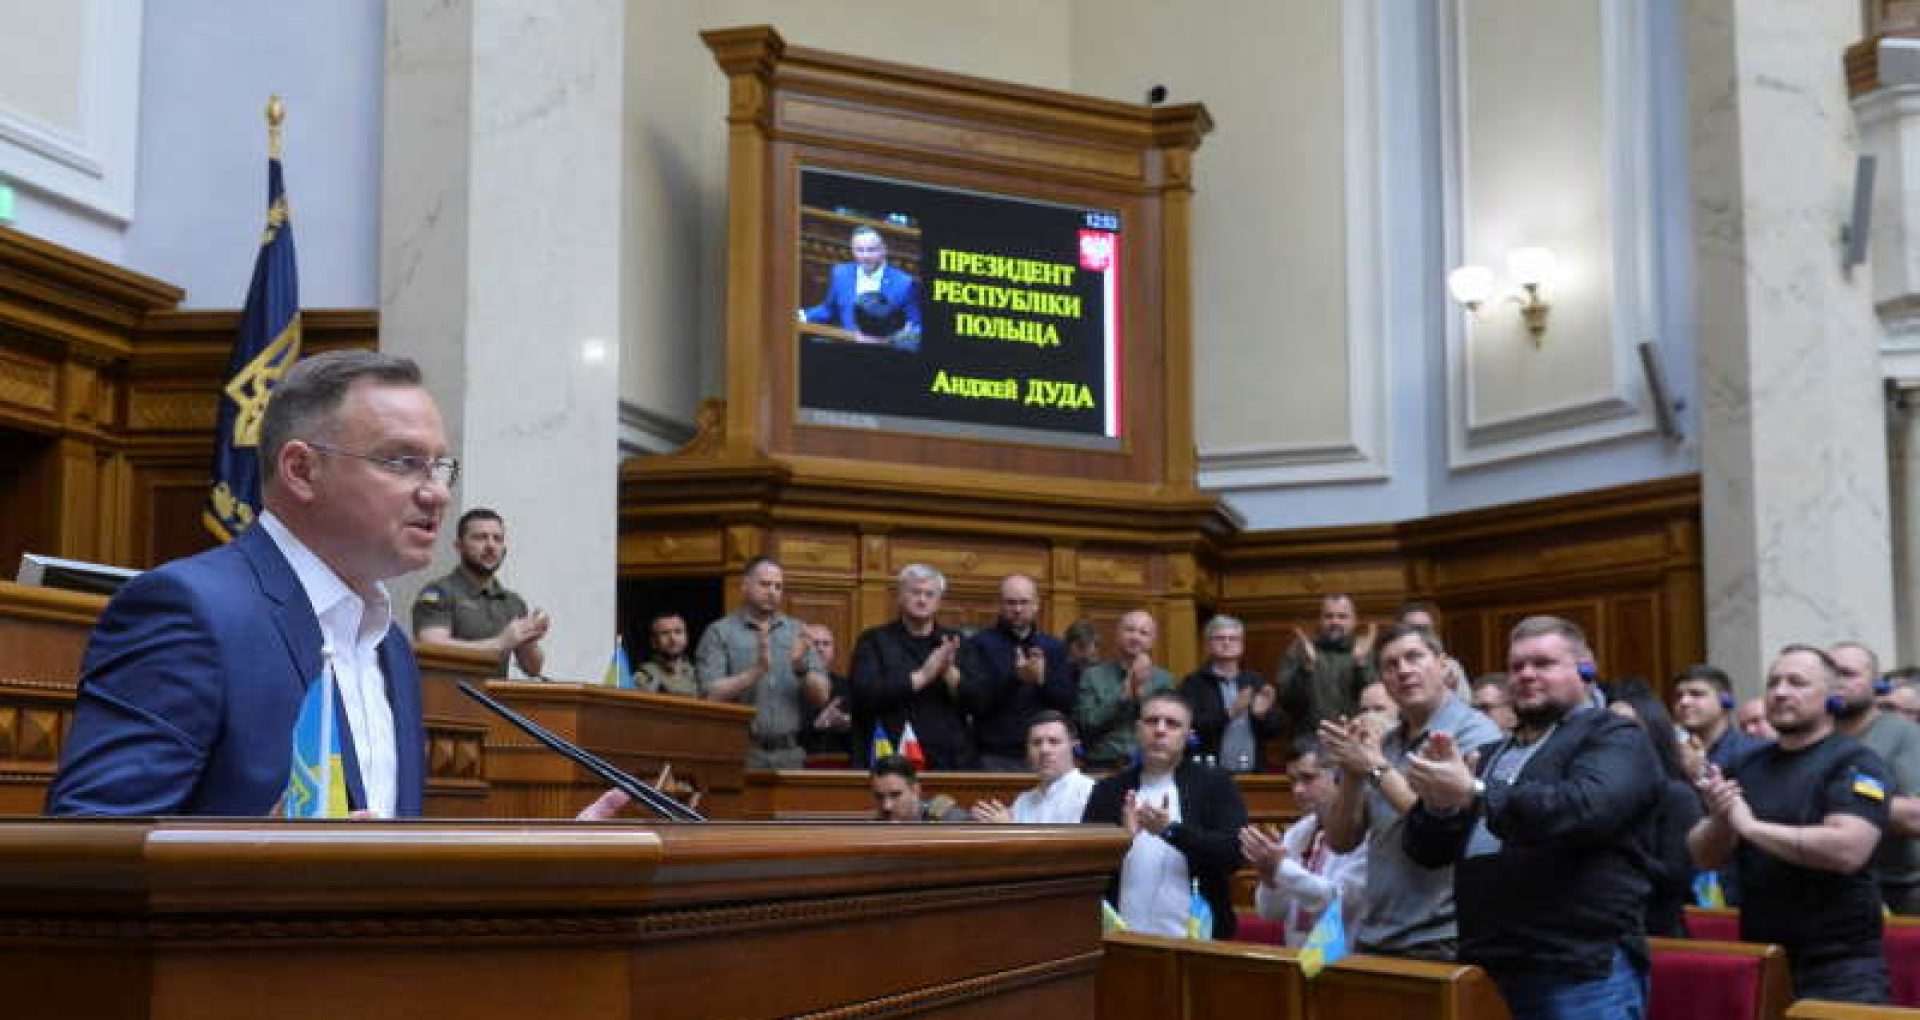 Andrzej Duda, discurs în Parlamentul de la Kiev: „Nu voi avea odihnă până când Ucraina nu va deveni membră a UE”